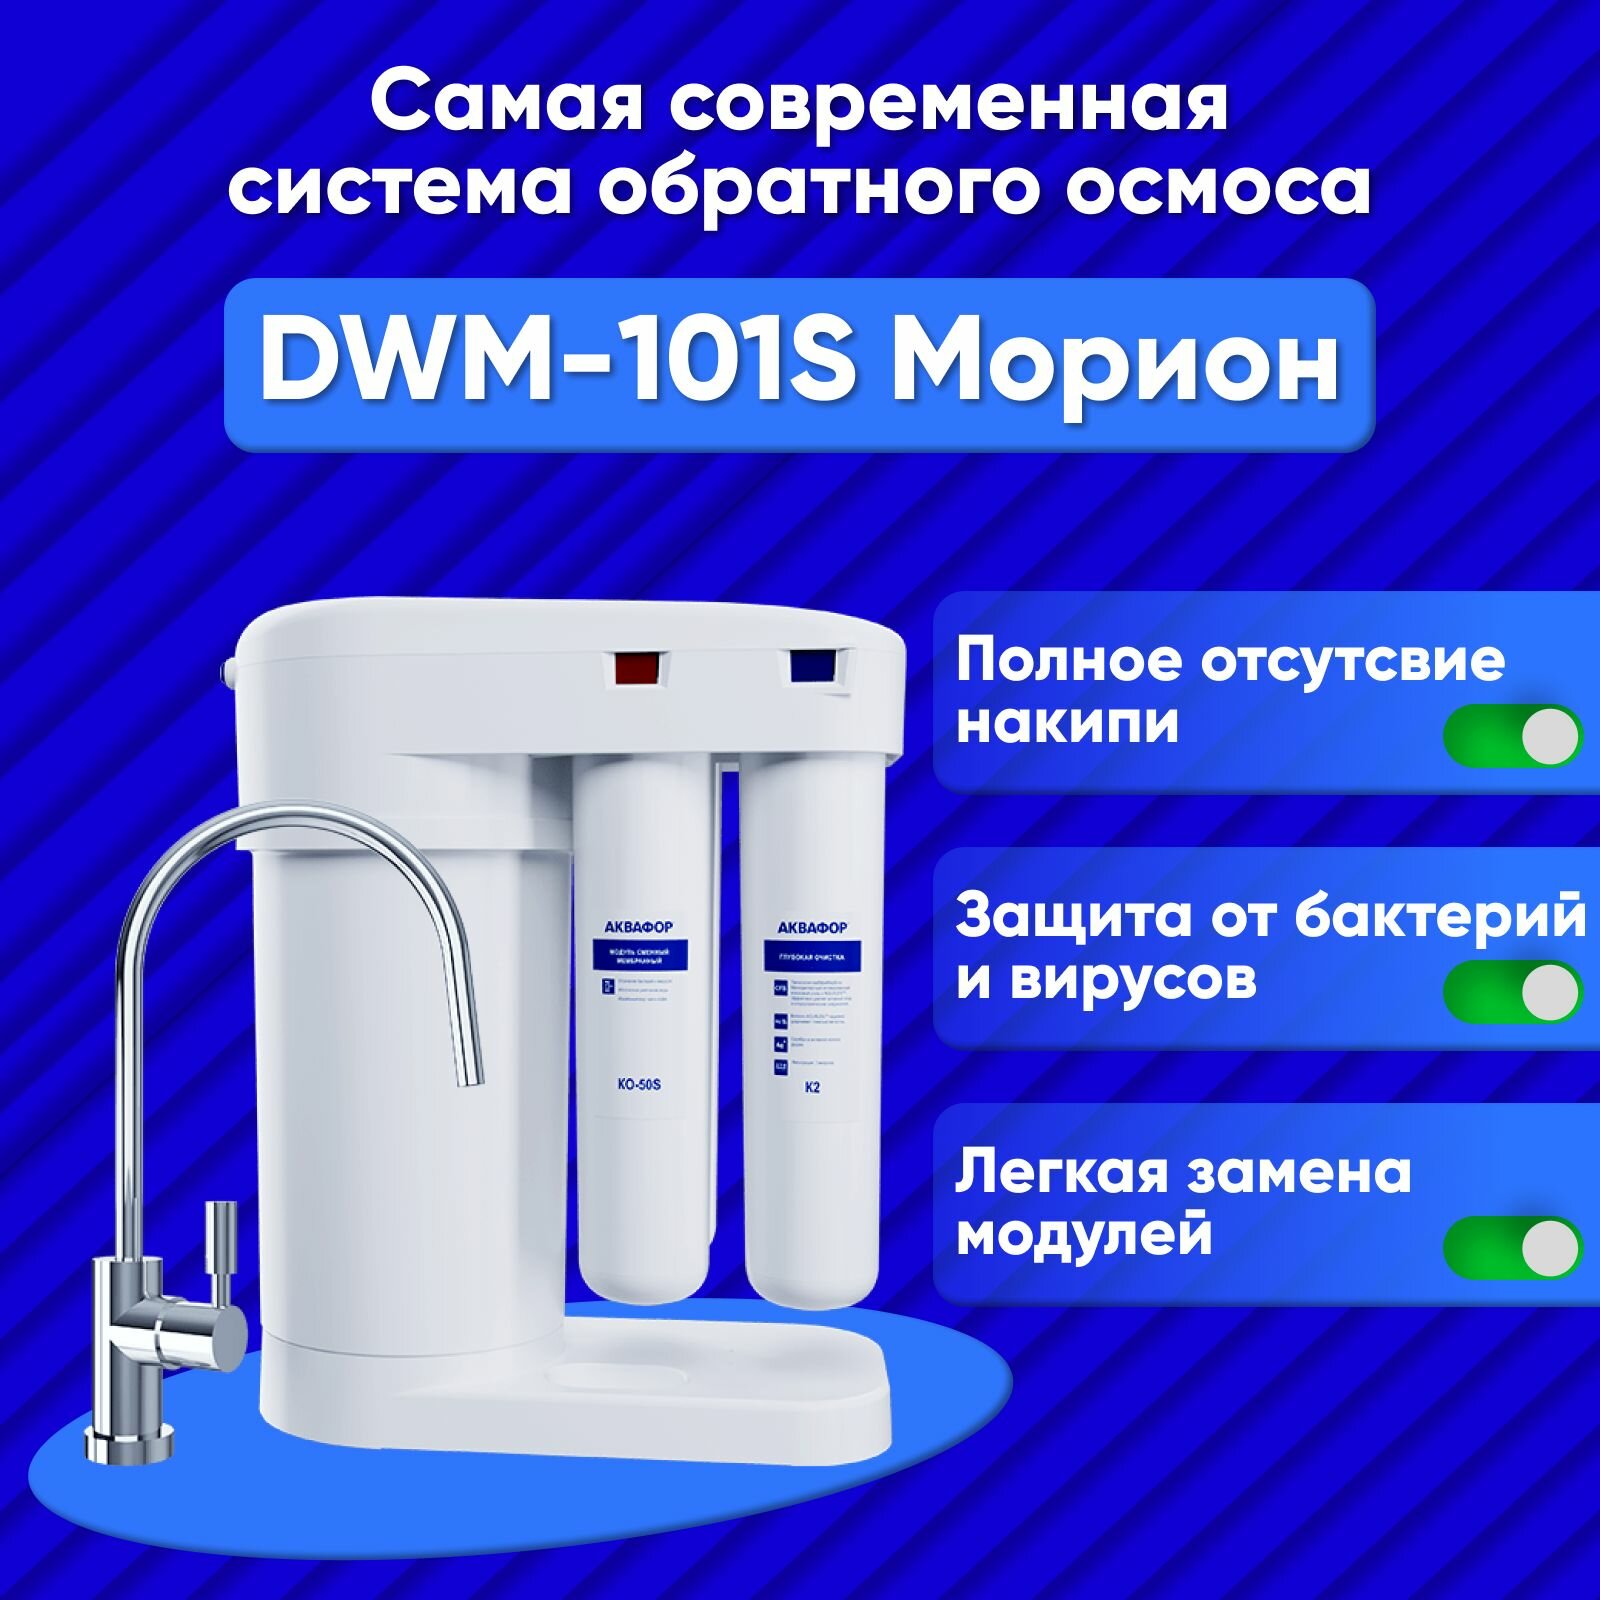 Автомат питьевой воды Аквафор DWM-101S Морион.